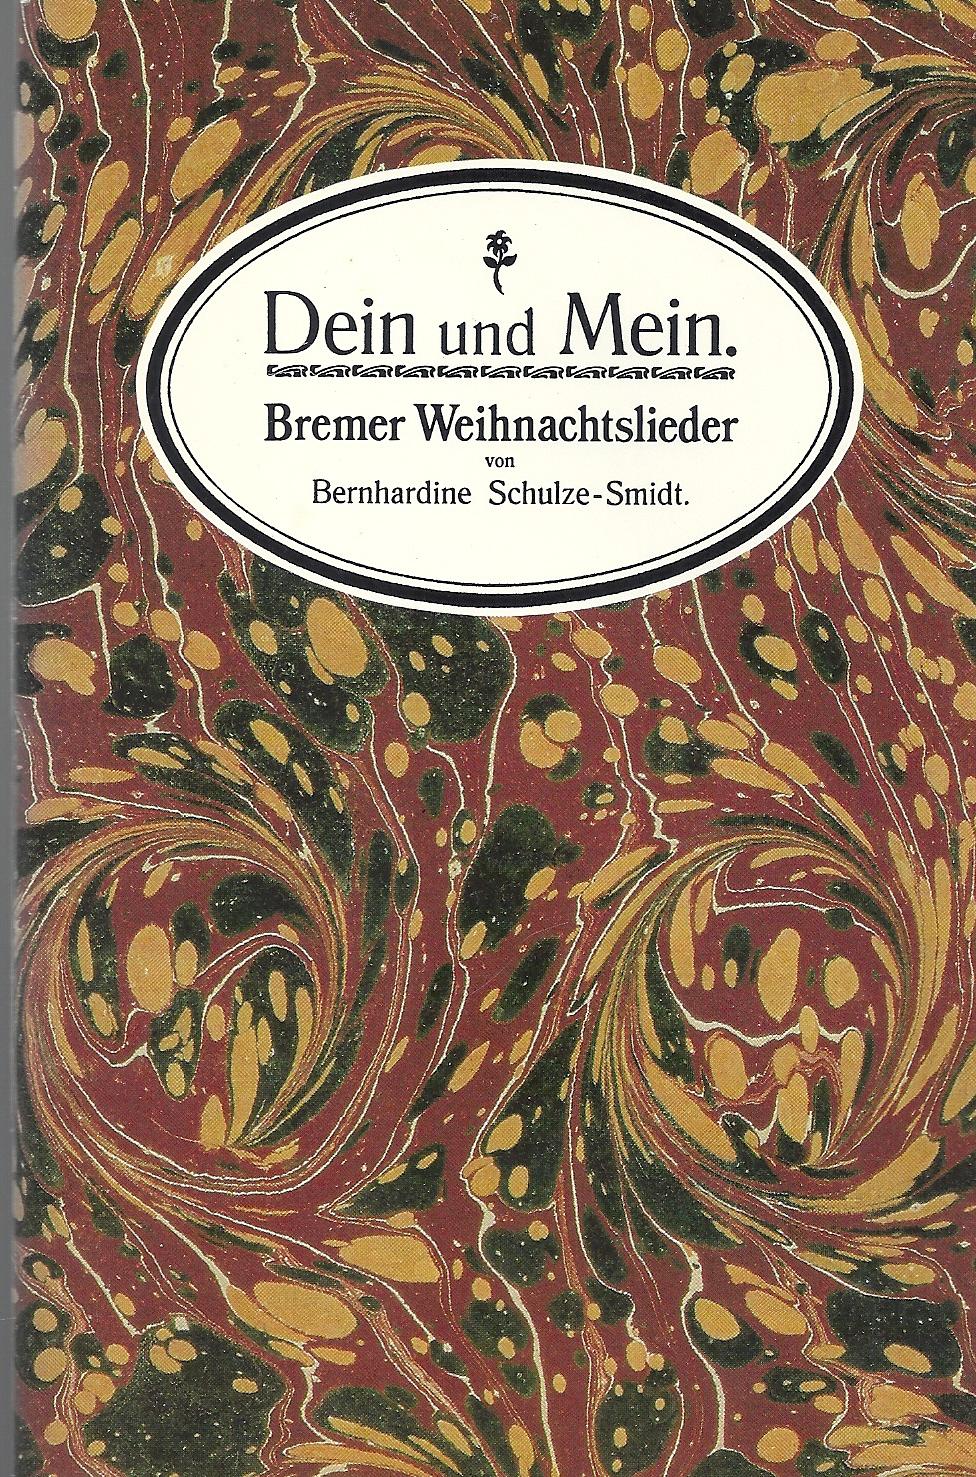 Dein und Mein - Bremer Weihnachtslieder ; Text ohne Noten - Mit Illustrationen - Schulze-Smidt,Bernhardine (pseu. Ernst Oswald)